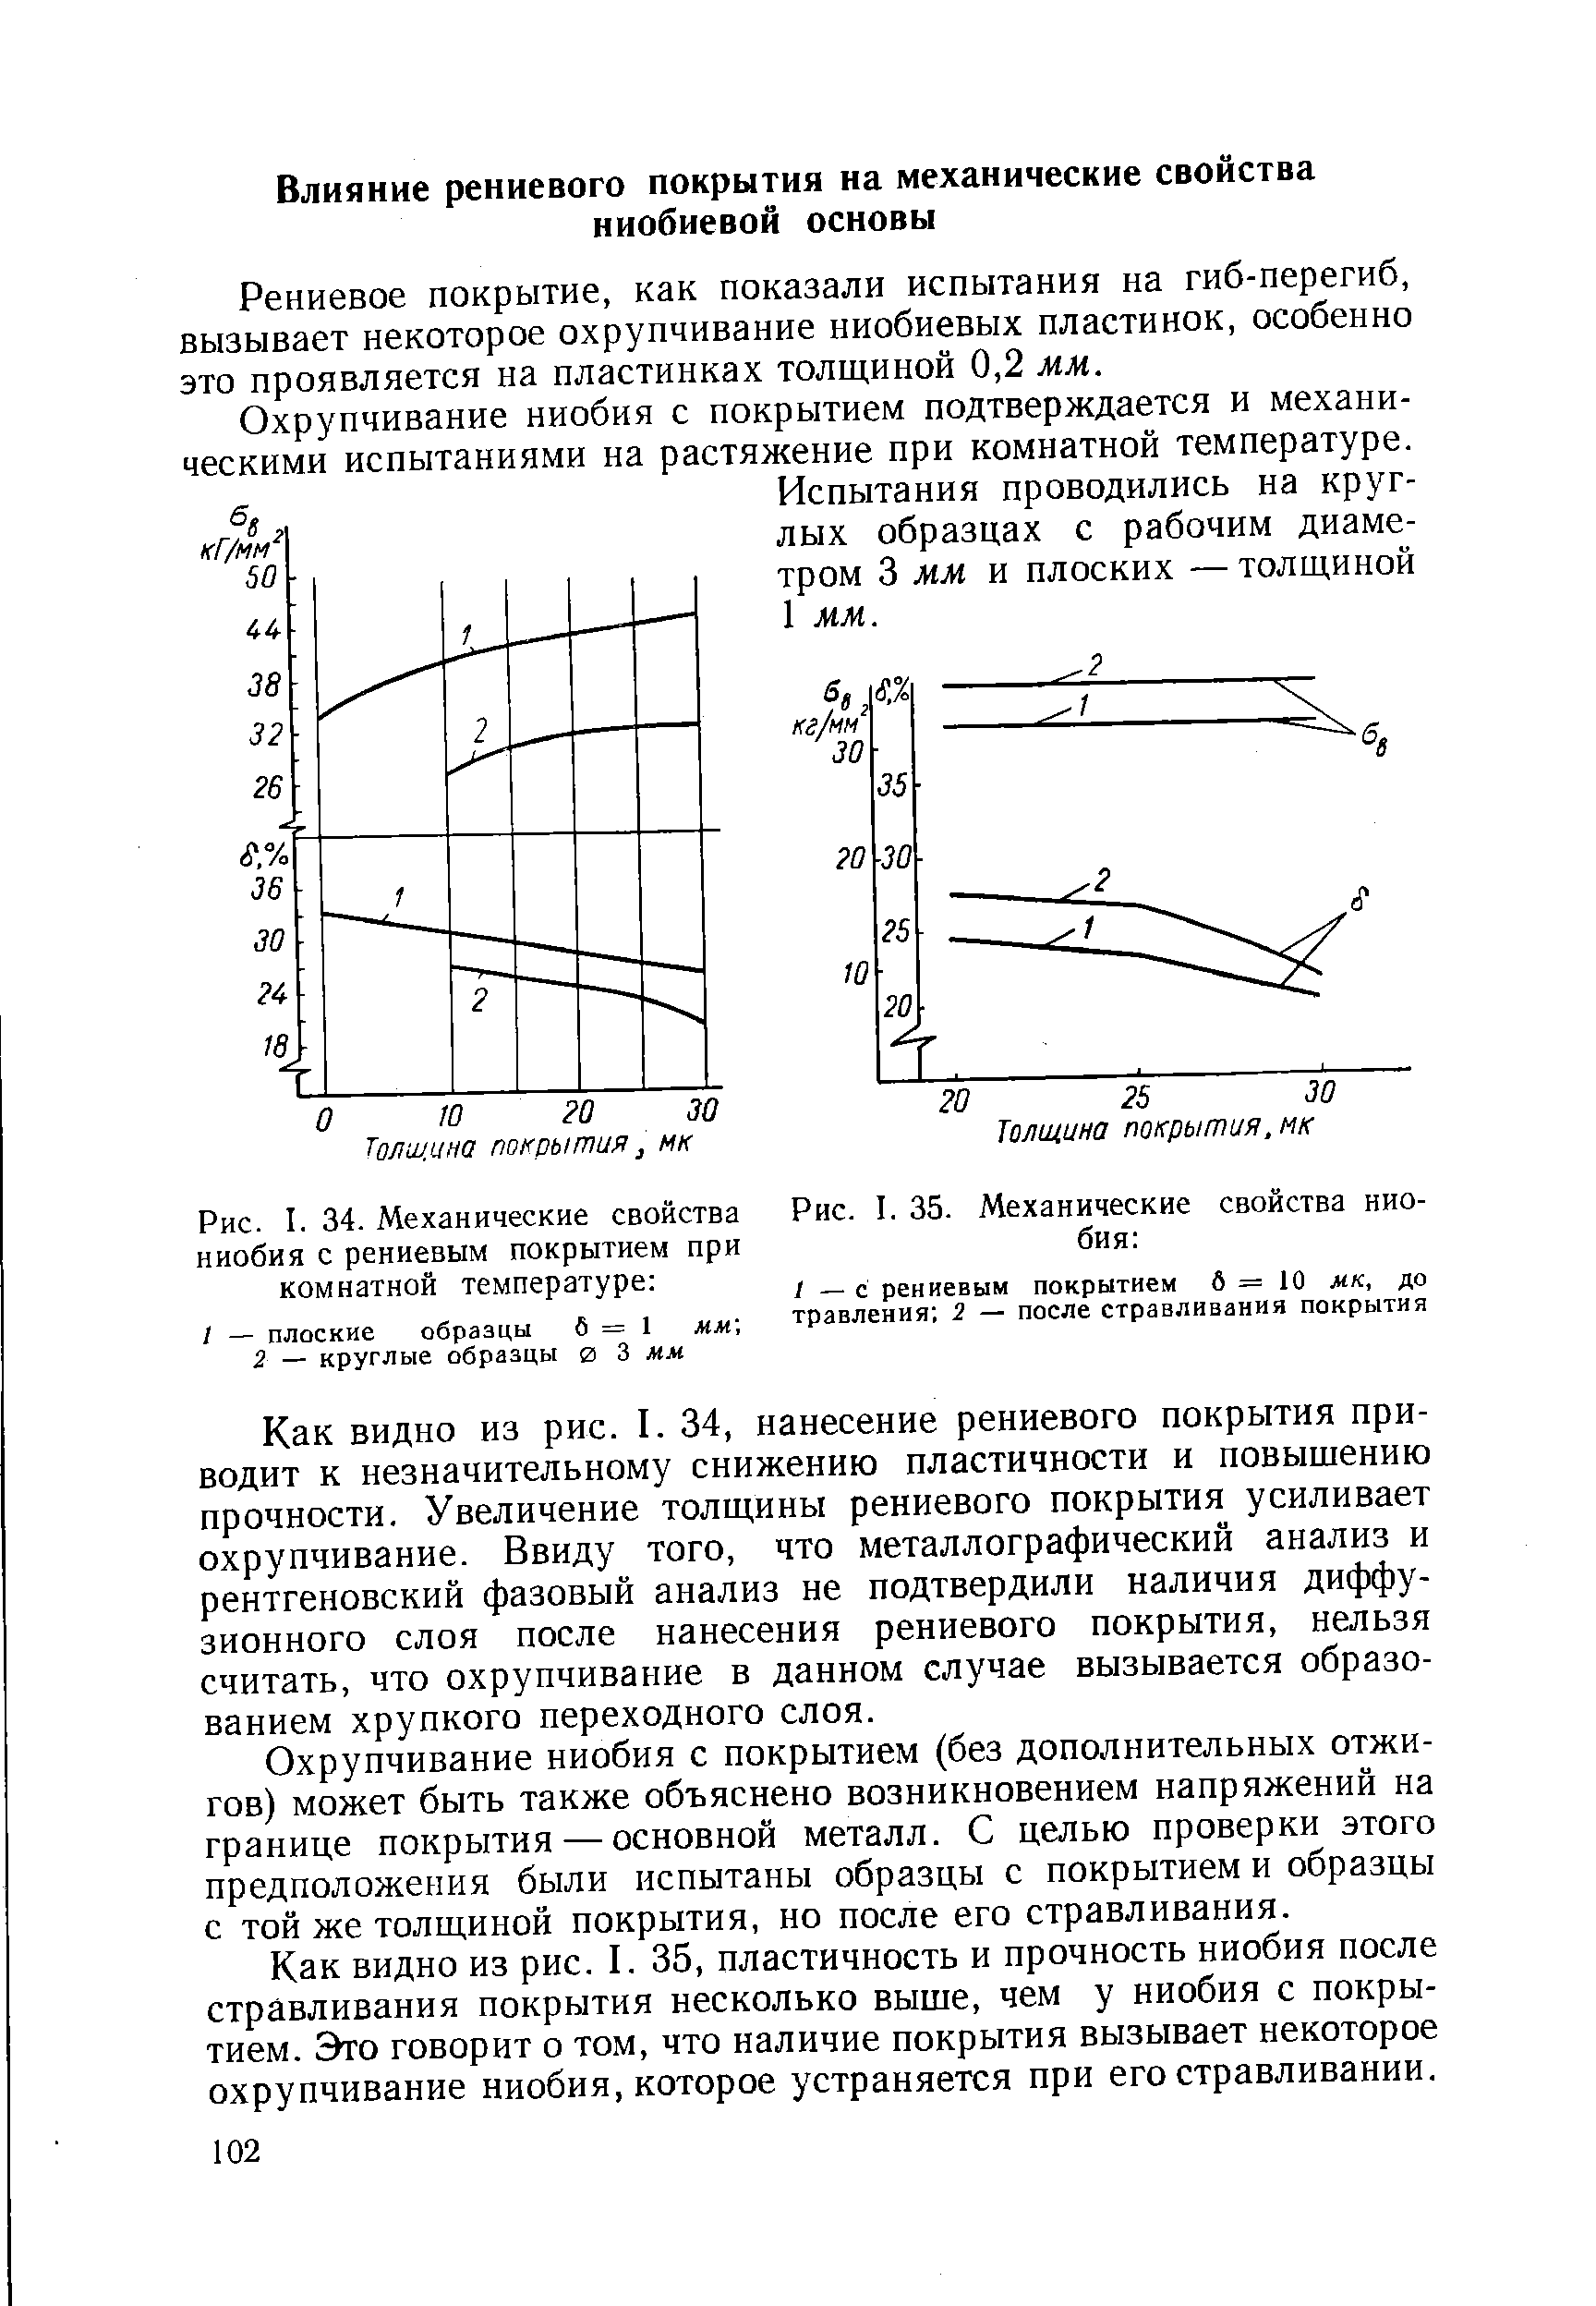 Рис. I. 34. Механические свойства ниобия с рениевым покрытием при комнатной температуре 
